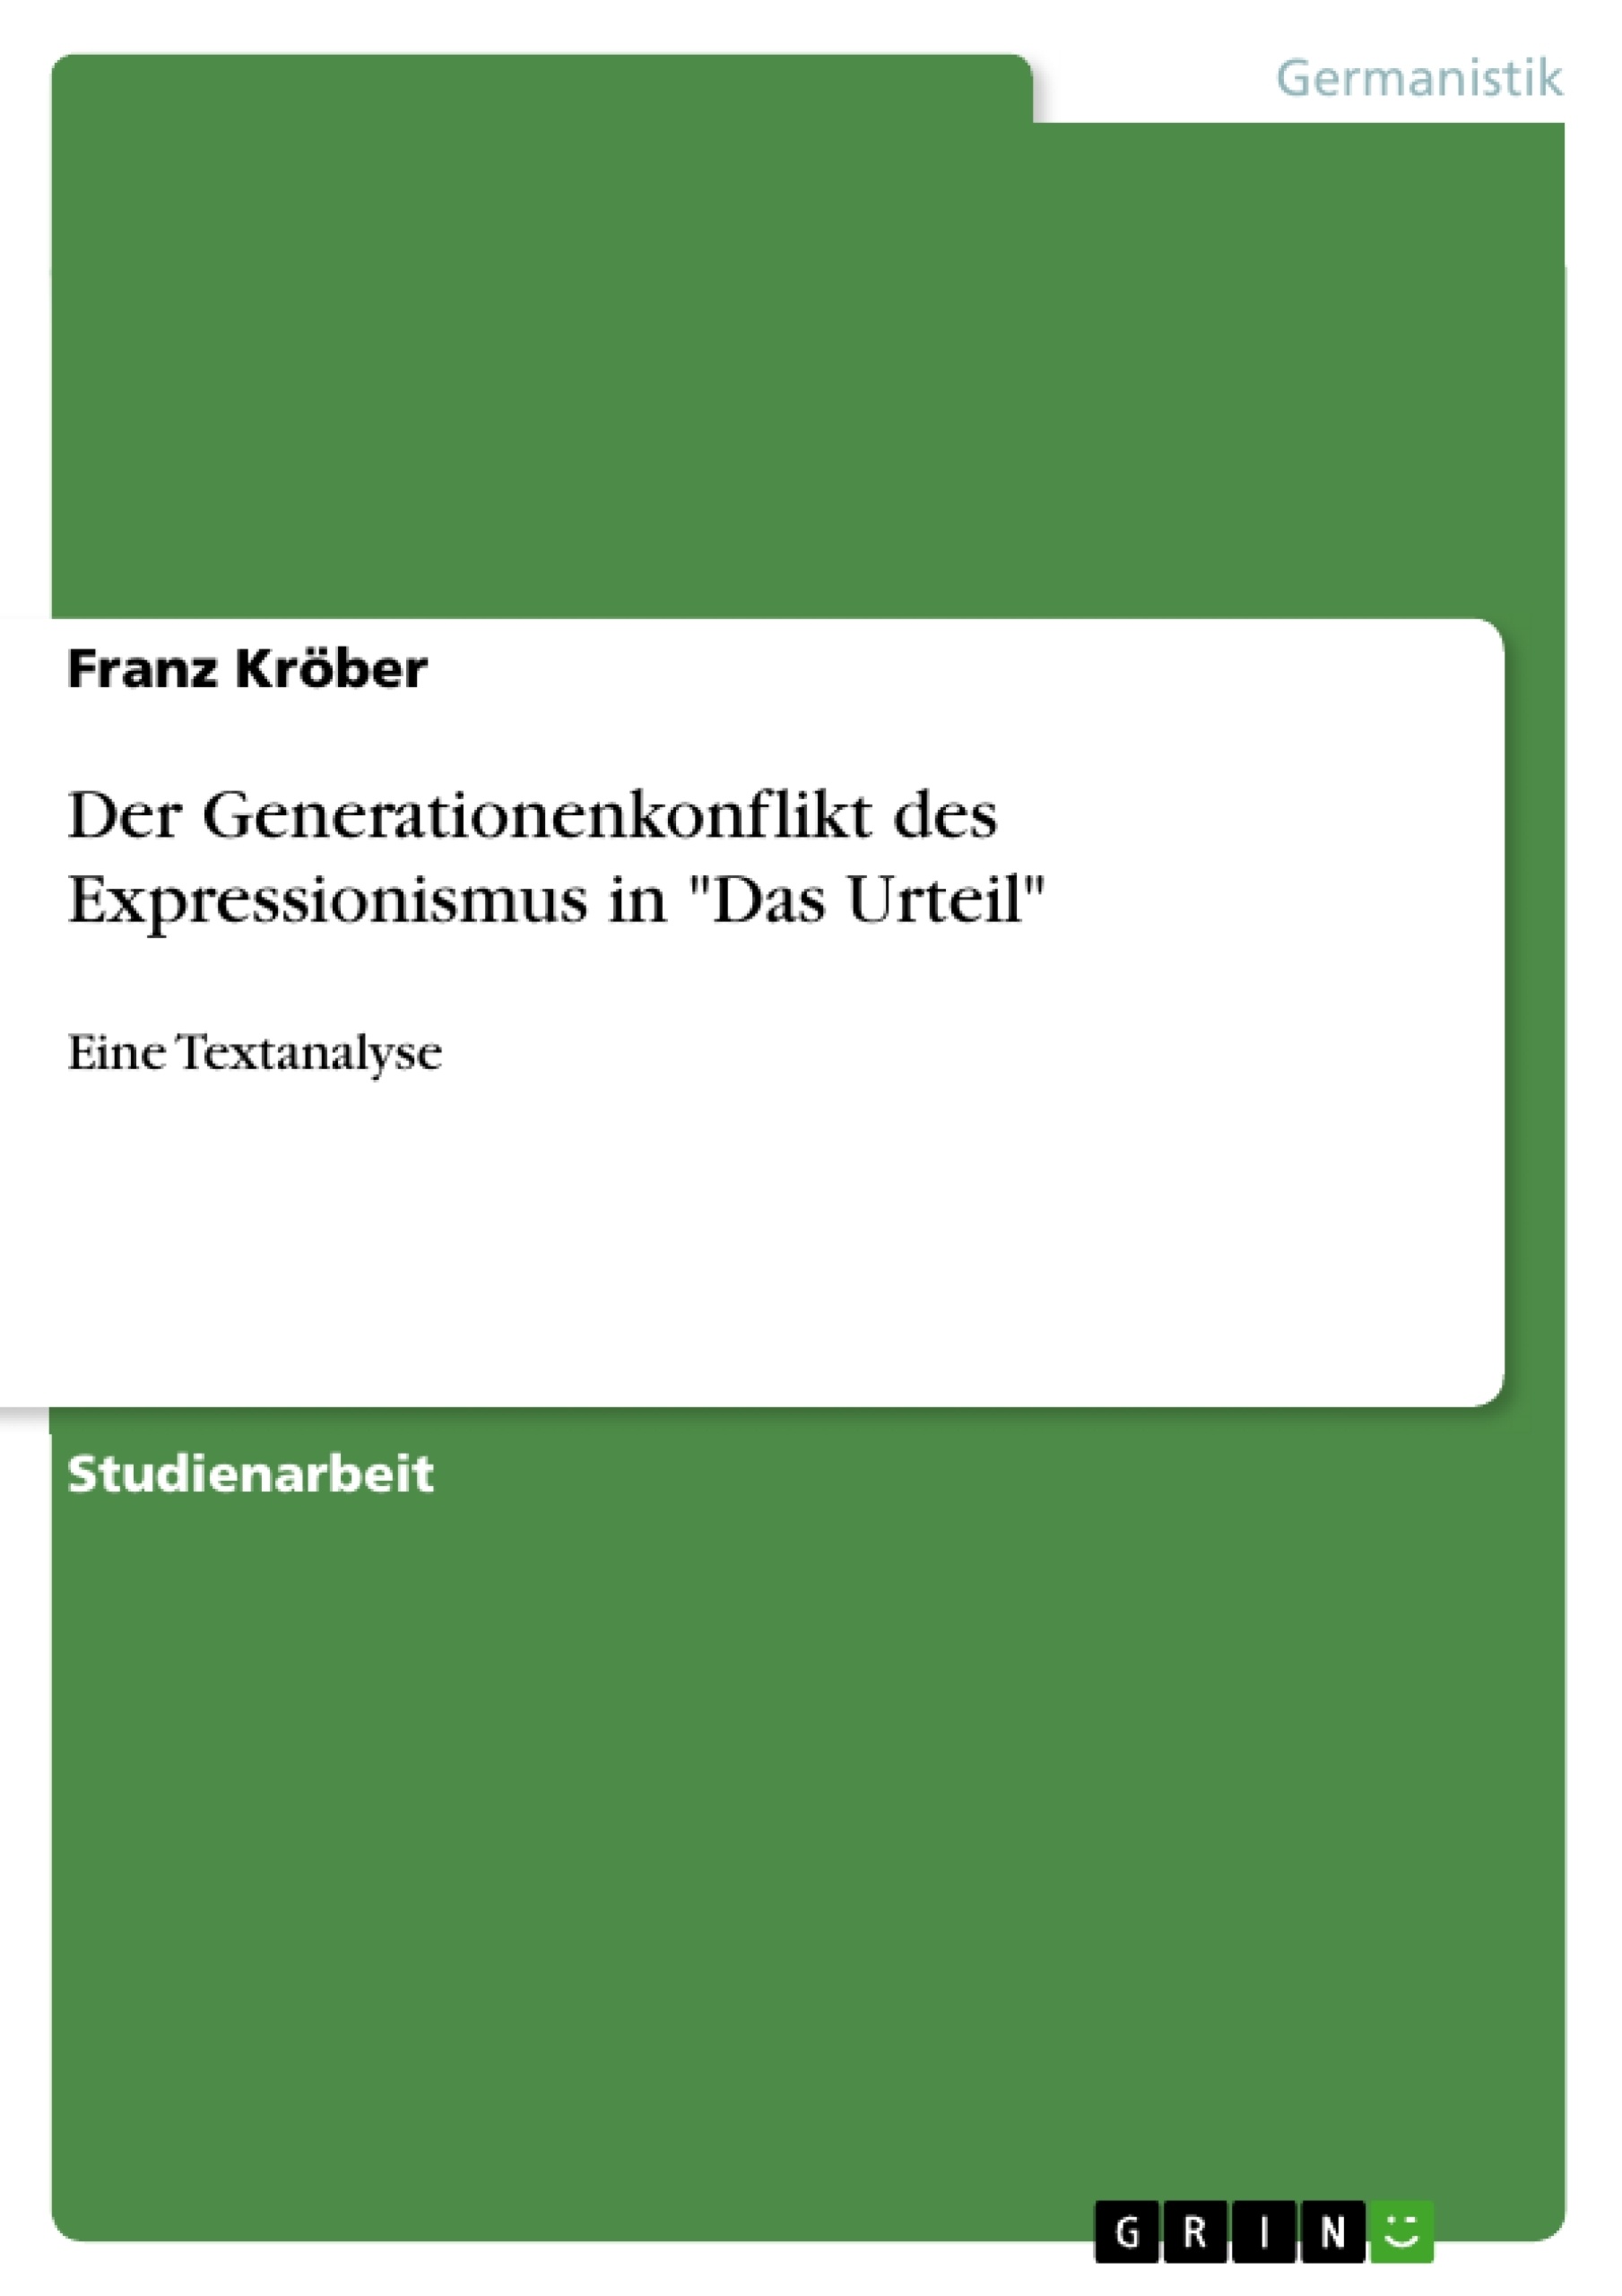 Title: Der Generationenkonflikt des Expressionismus in "Das Urteil"